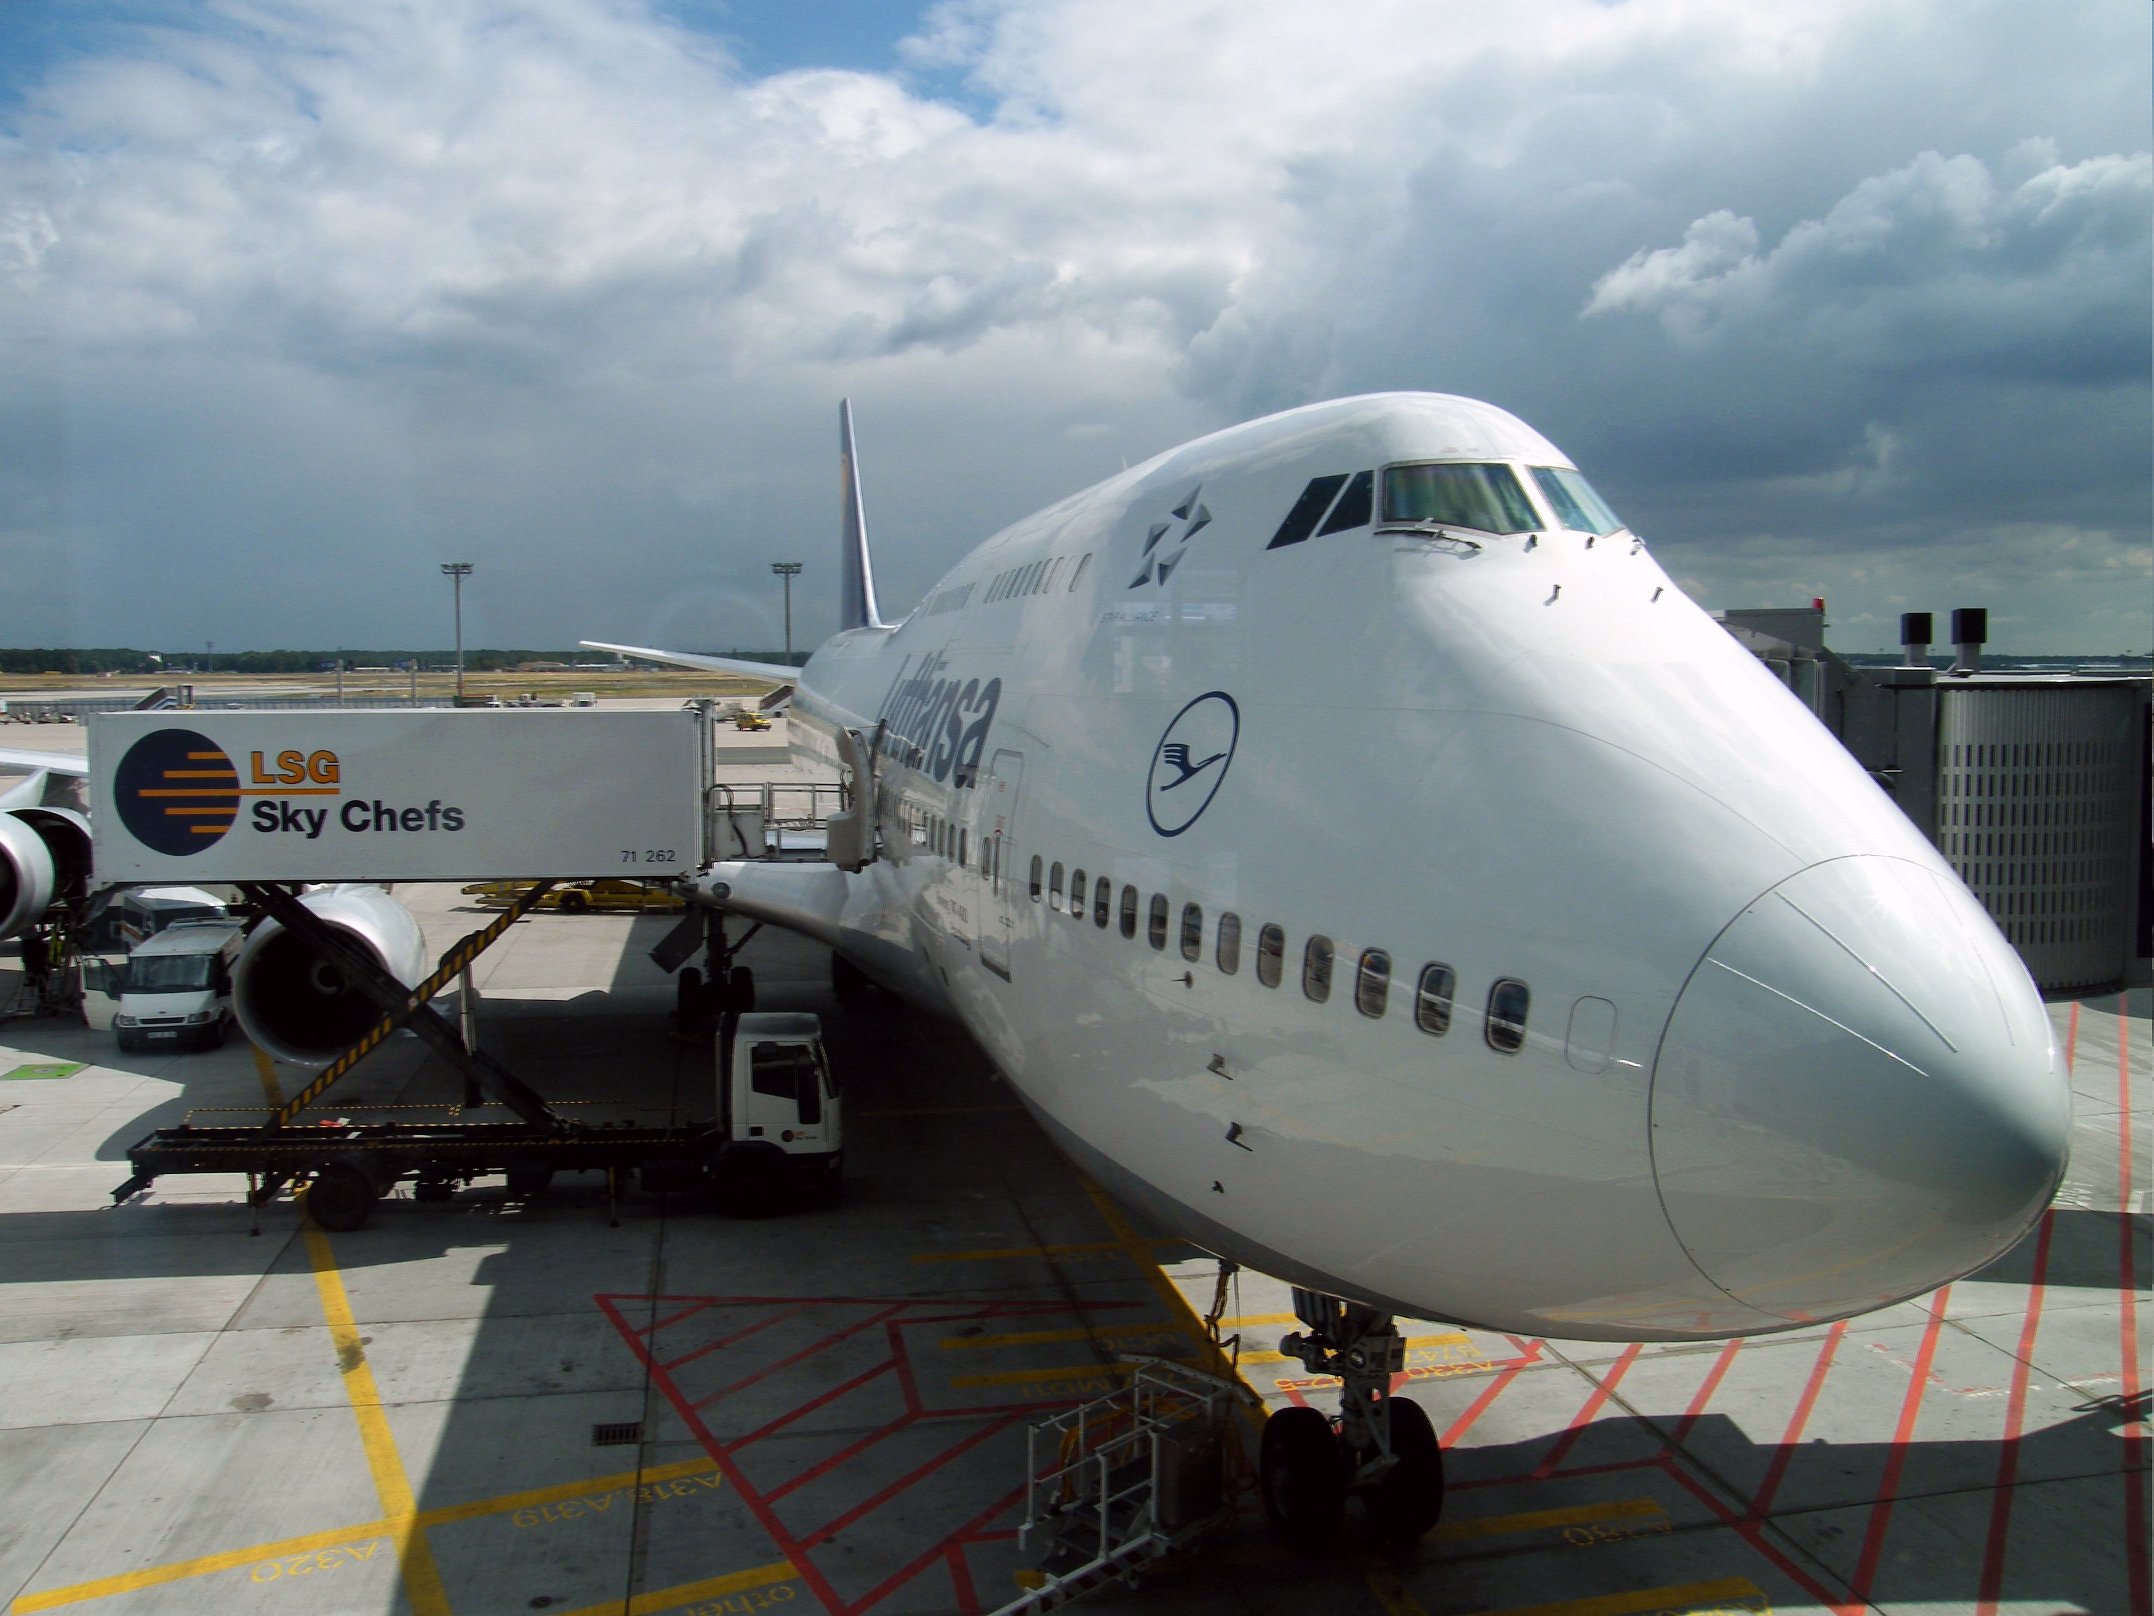 LSG Sky Chefs_Boeing_747_Lufthansa_Frankfurt_Airport